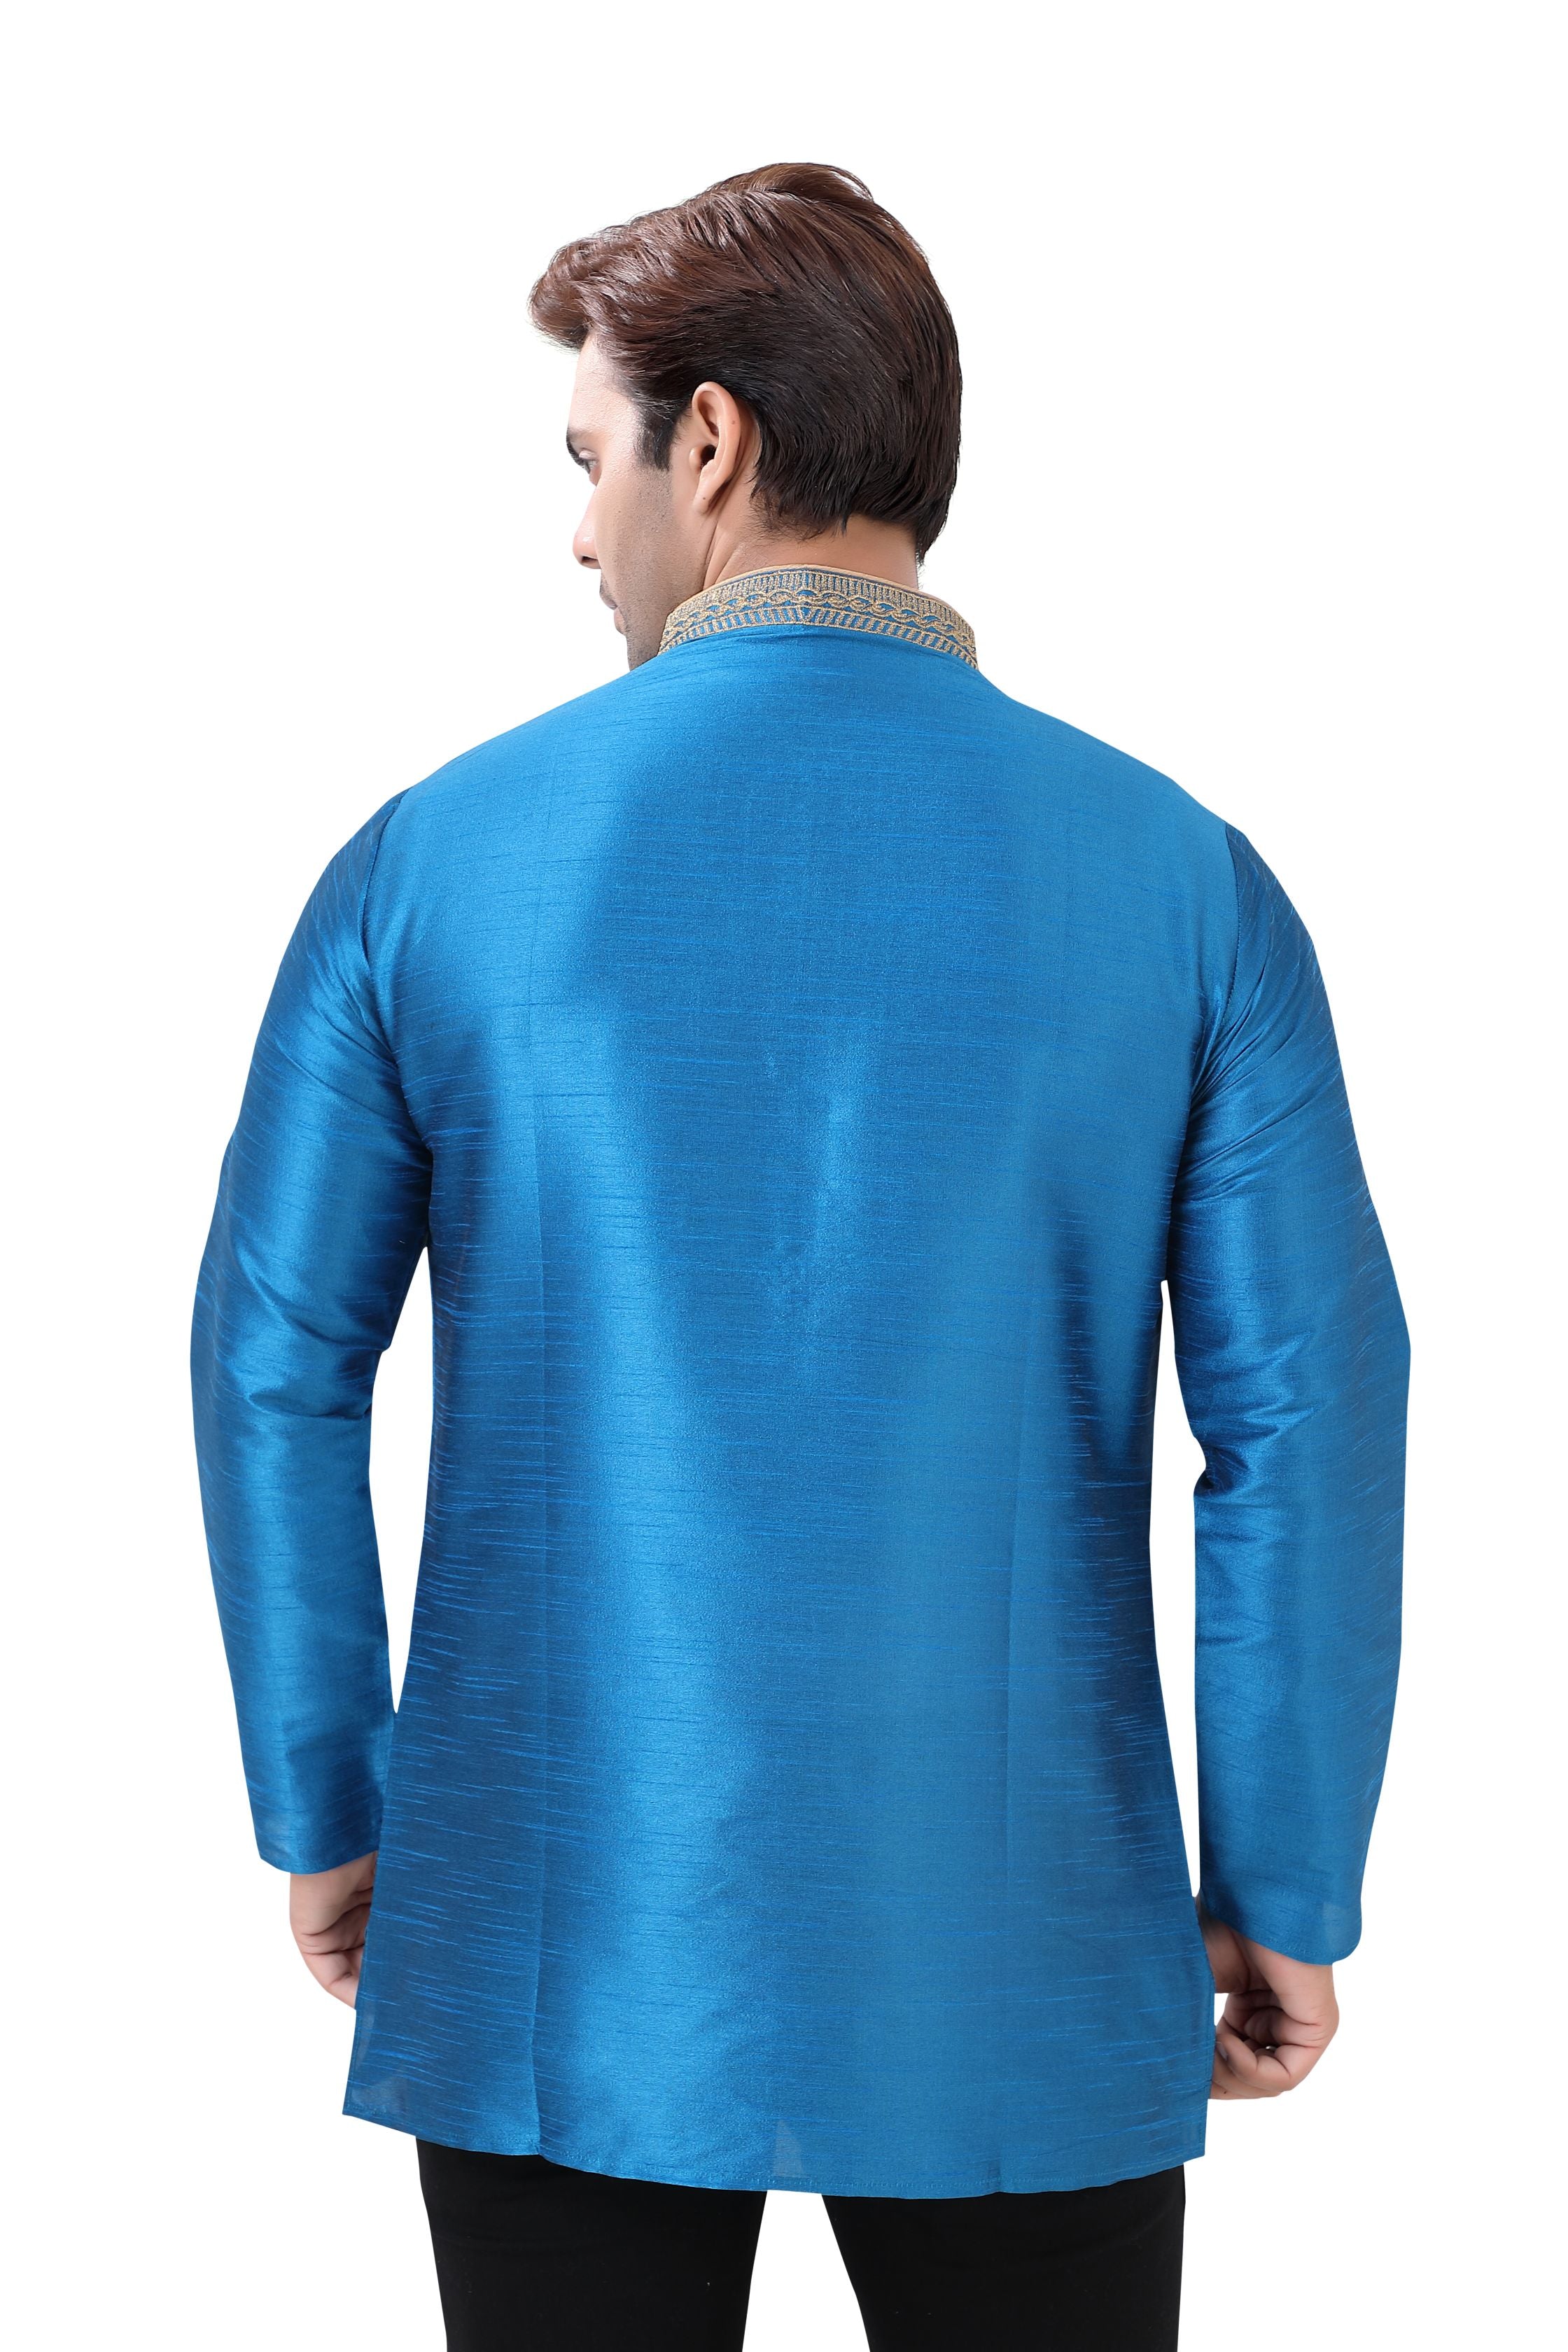 Banarasi Dupion Silk Short Kurta with embroidery in Firozi Blue